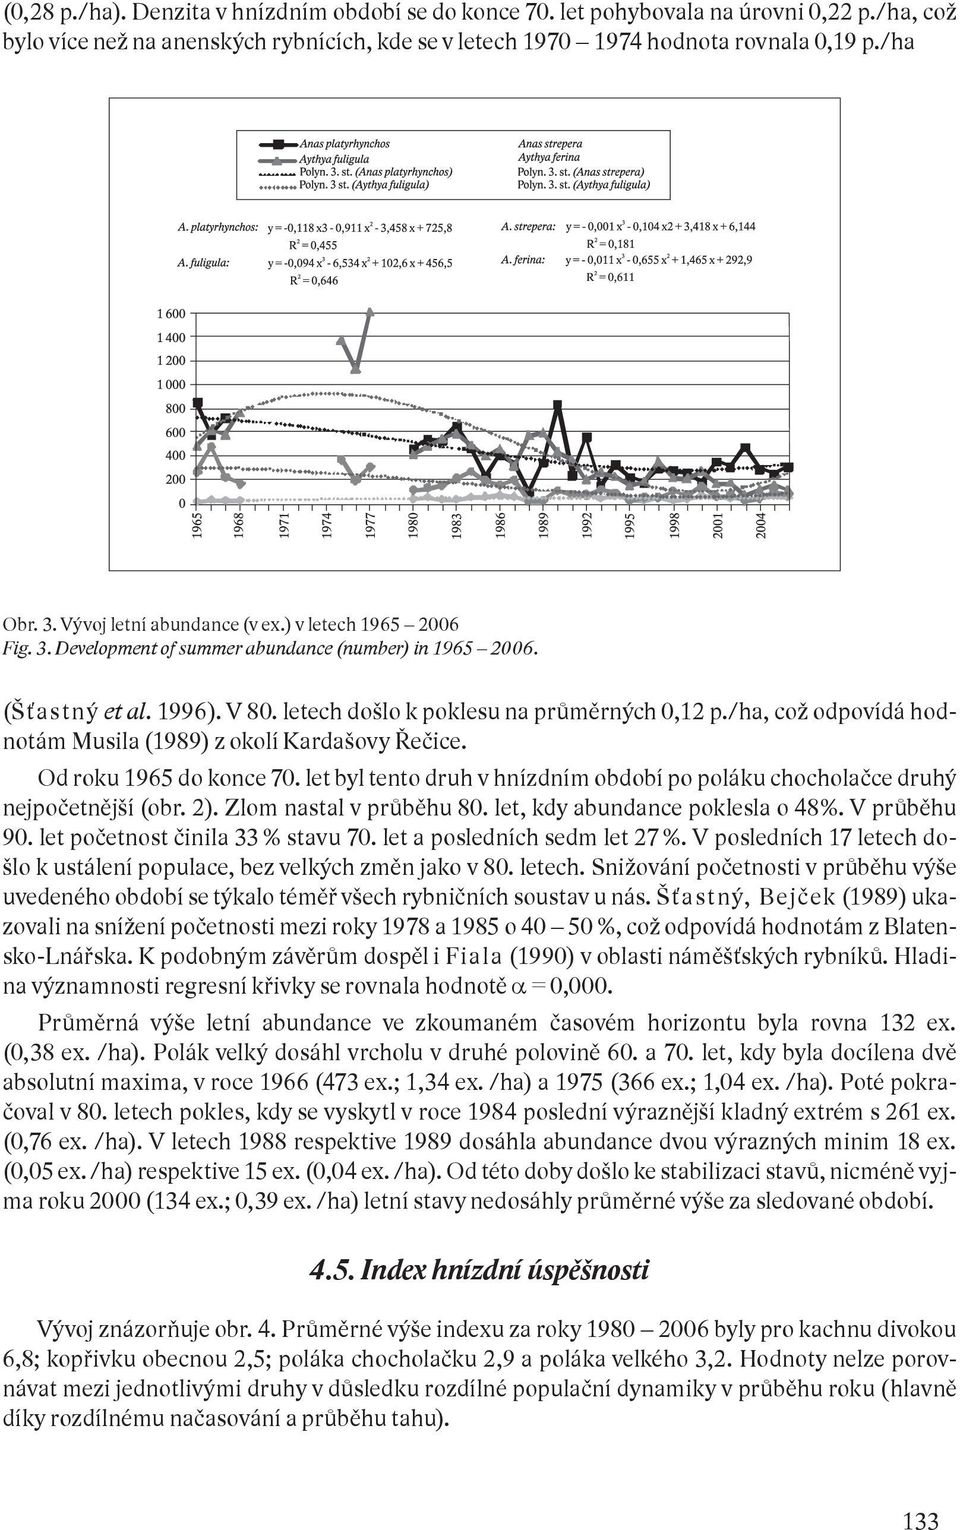 /ha, což odpovídá hodnotám Musila (1989) z okolí Kardašovy Řečice. Od roku 1965 do konce 70. let byl tento druh v hnízdním období po poláku chocholačce druhý nejpočetnější (obr. 2).